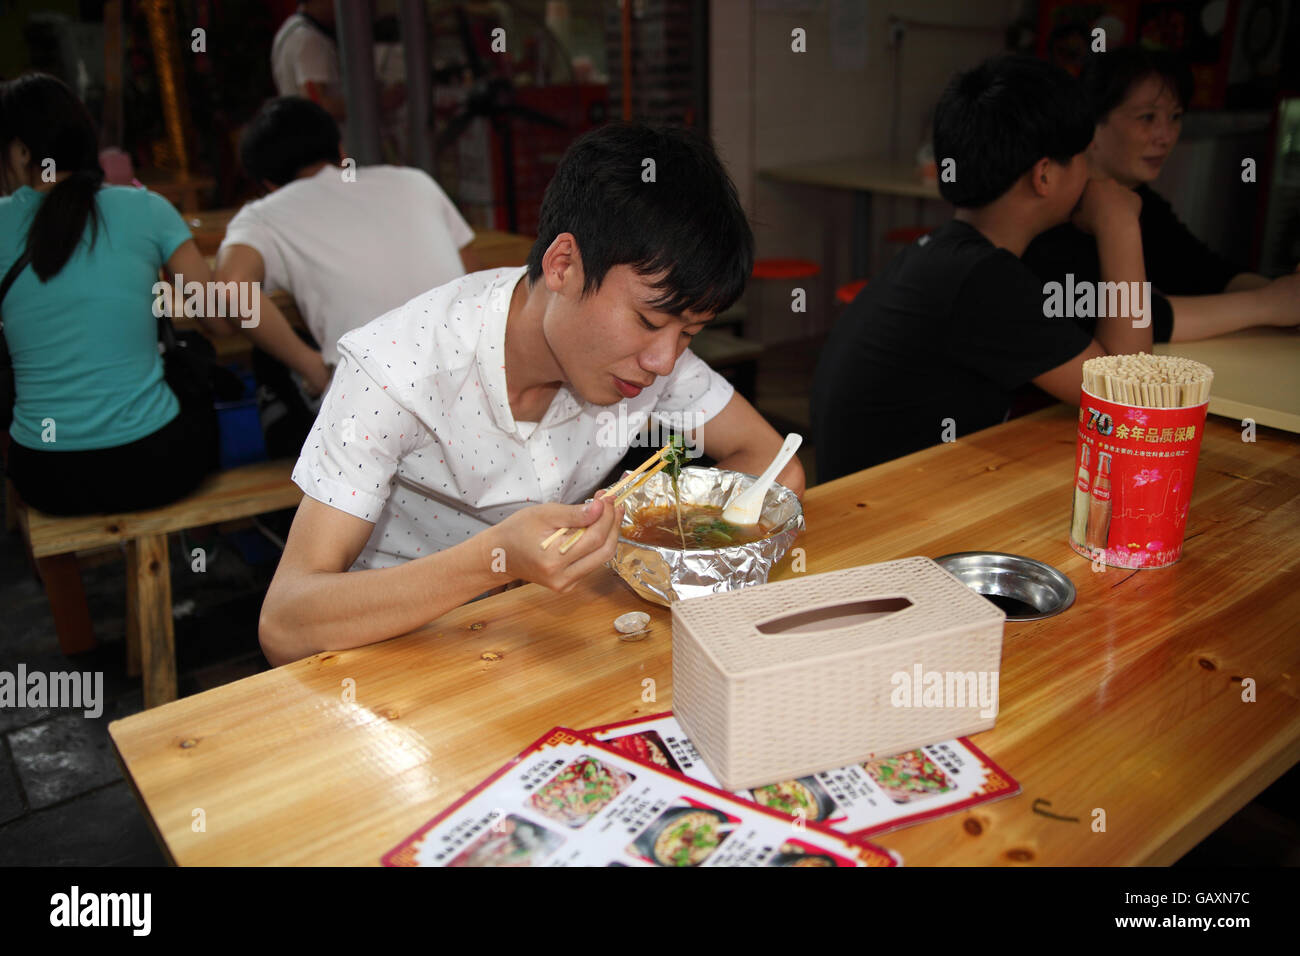 Jeune homme d'origine chinoise est en train de déjeuner dans un restaurant, il utilise des baguettes en mangeant de la soupe. Le marché de Guilin, Guangxi, Chine Banque D'Images